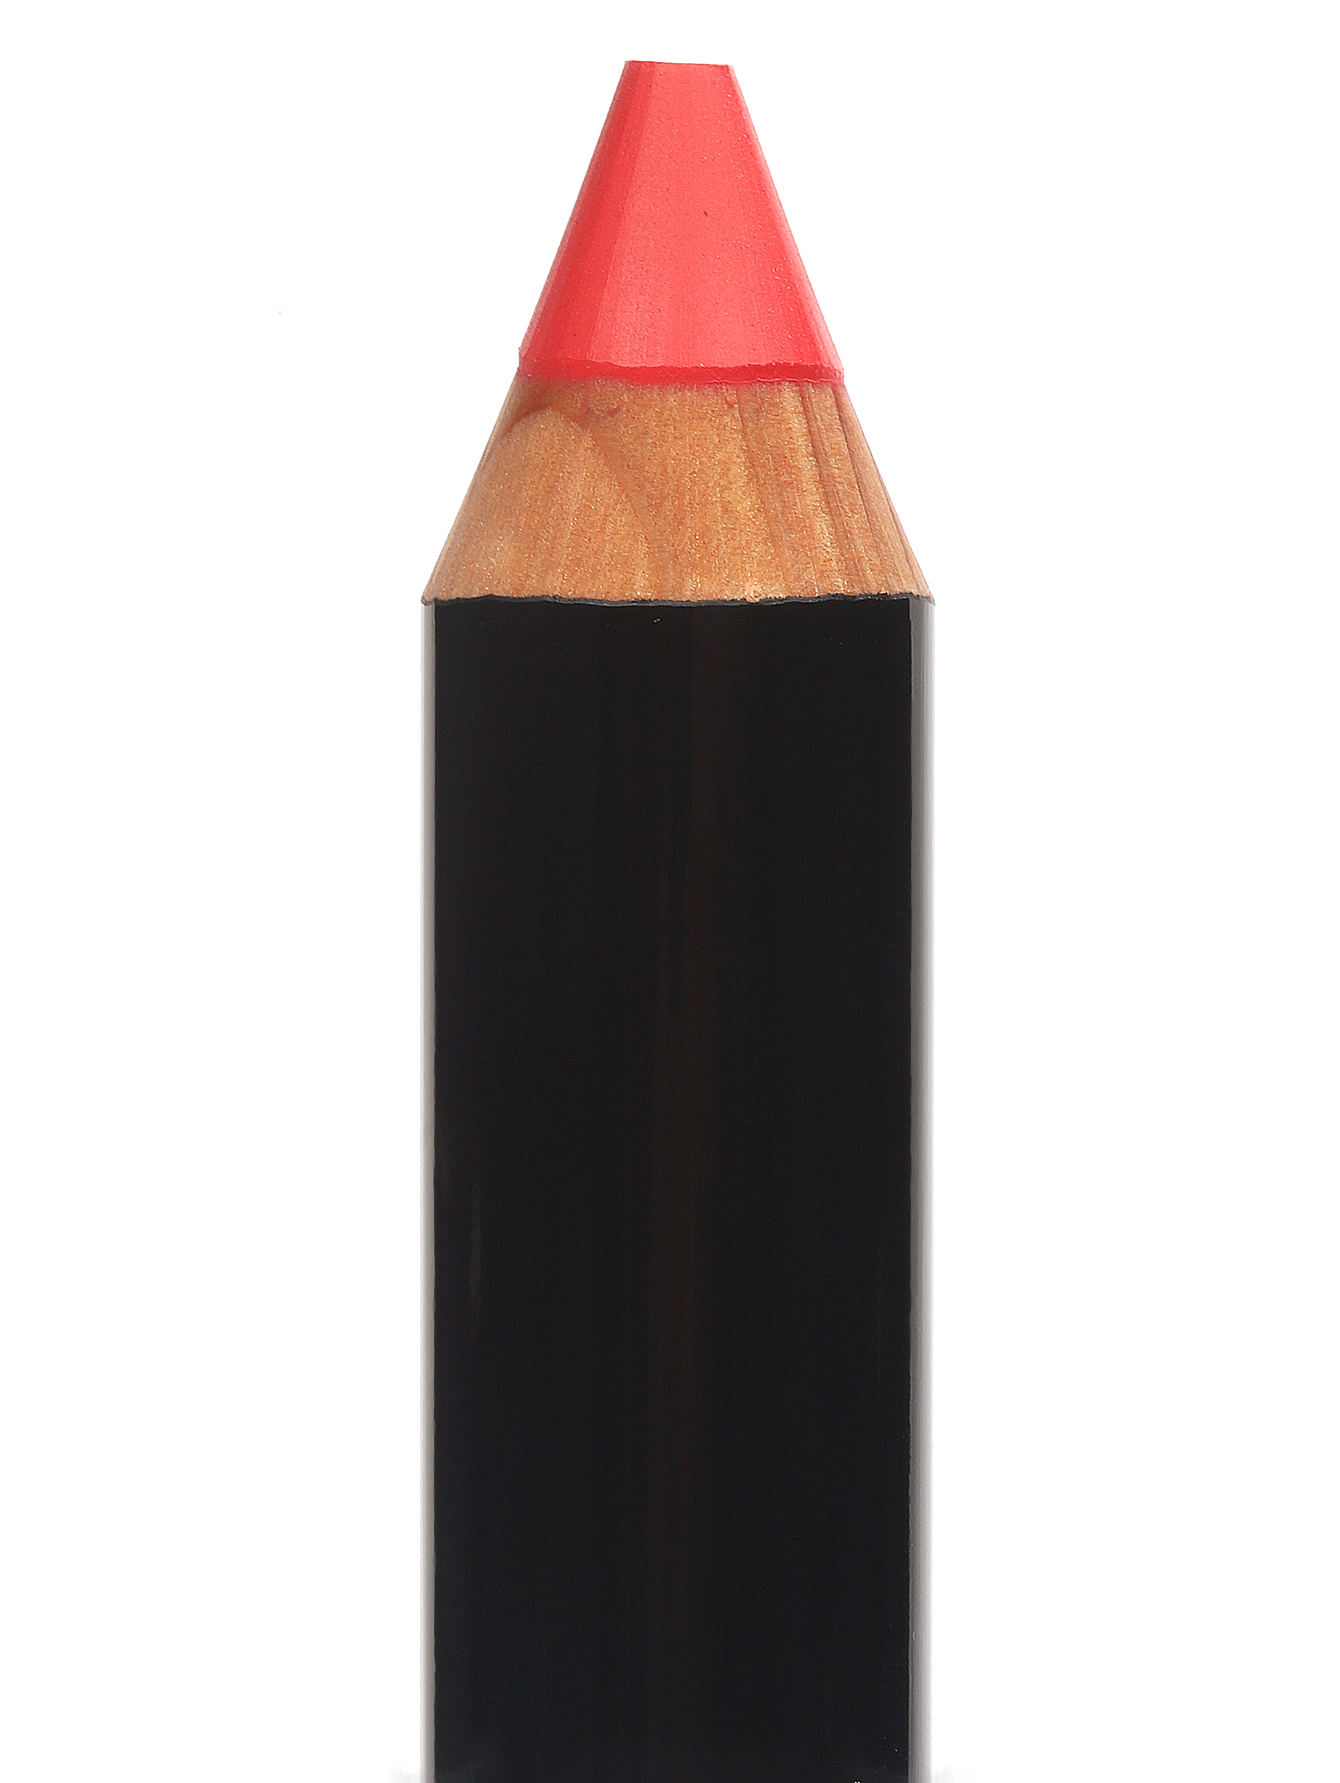  Карандаш для губ - Hot Orange, Art Stick - Общий вид